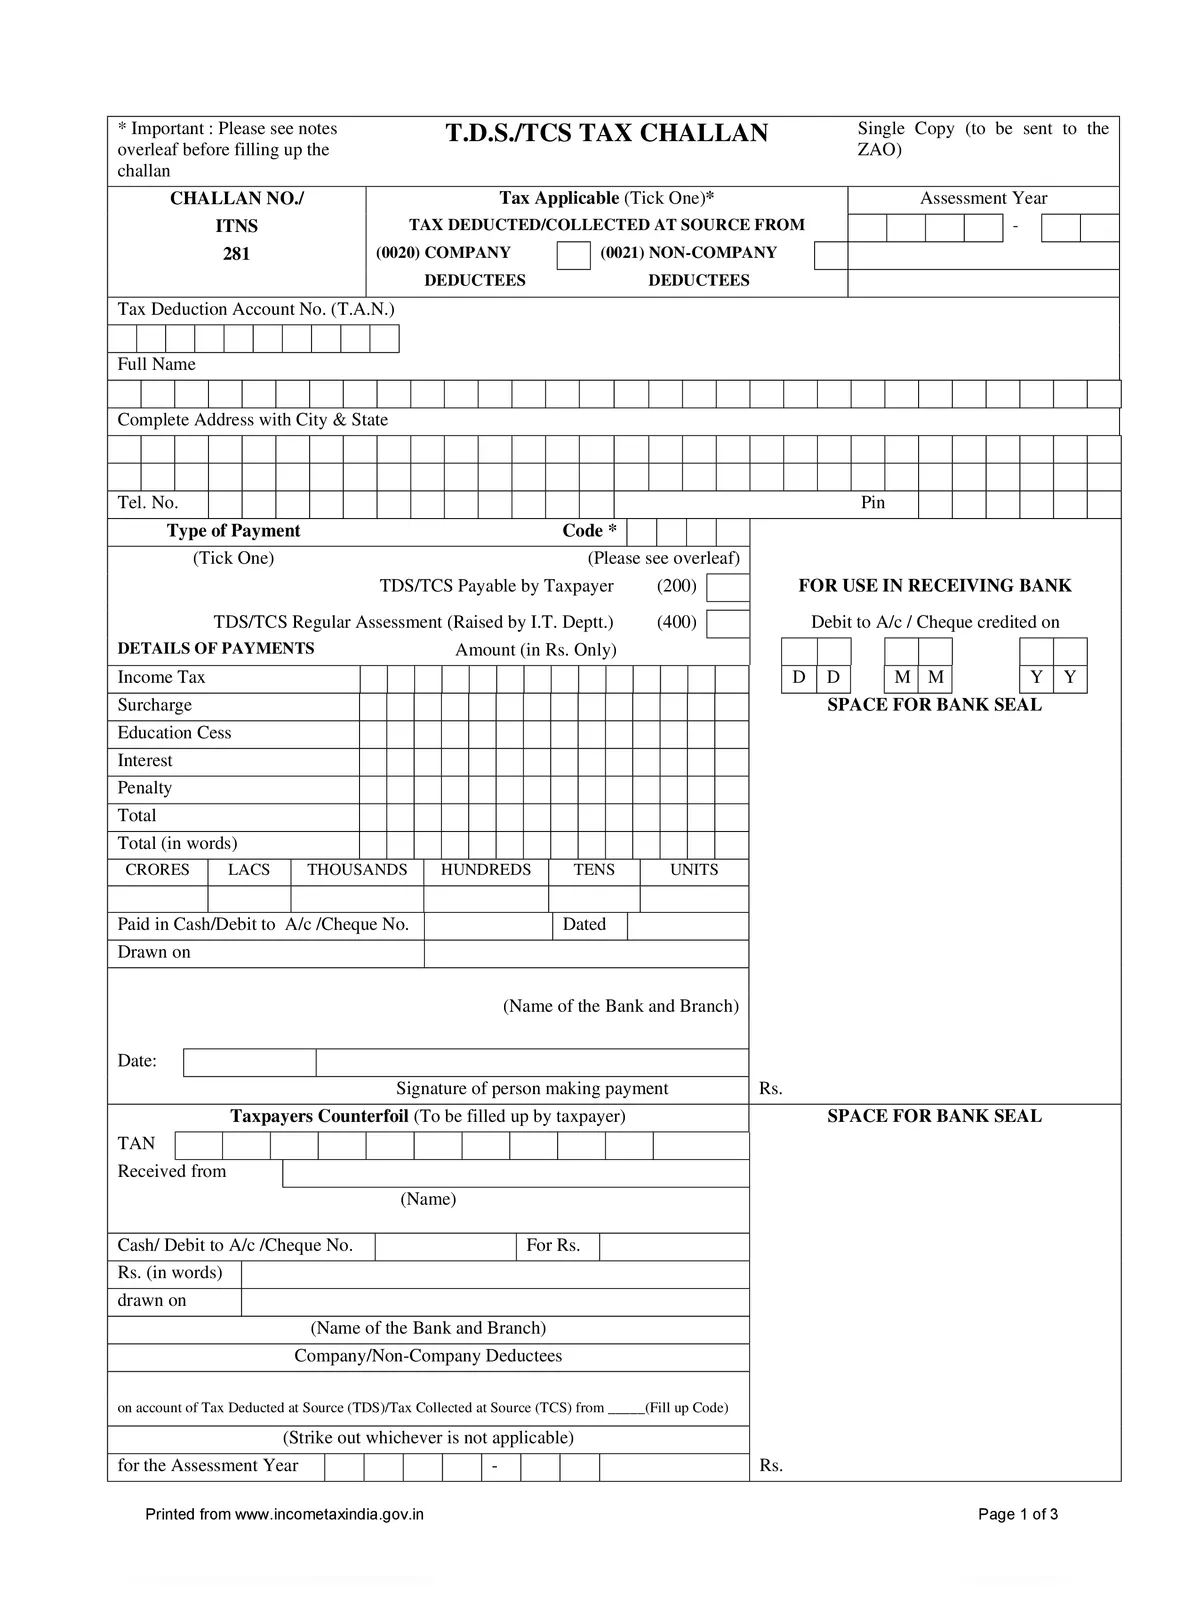 TDS/TCS Tax Challan Form 281